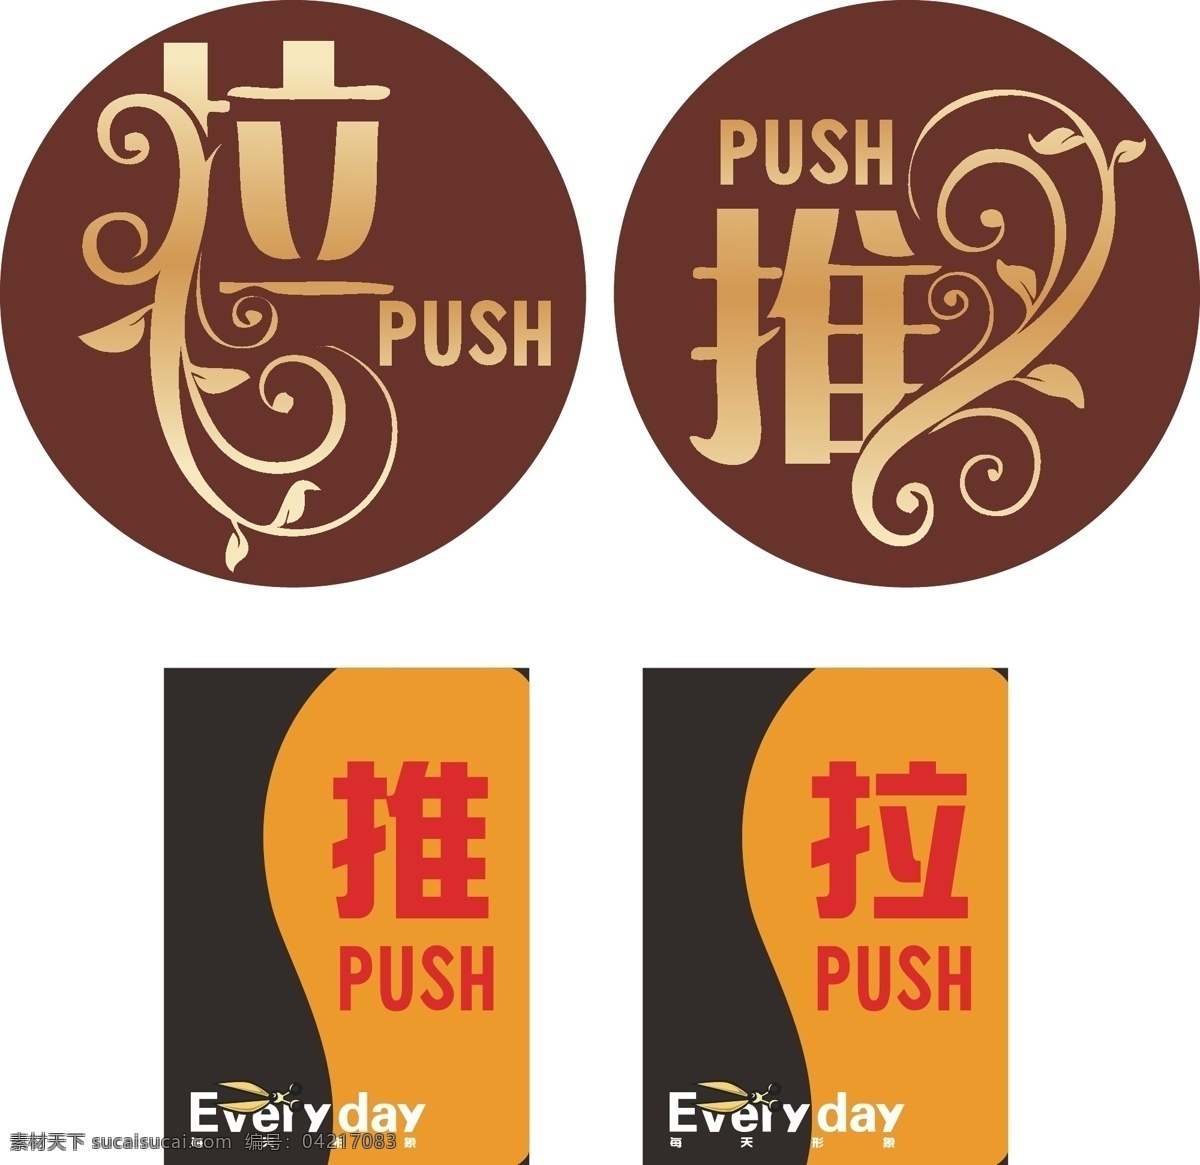 推拉 推拉矢量素材 推拉模板下载 推 拉 vi牌 push pull 酒店vi 企业 logo 标志 标识标志图标 矢量 其他设计